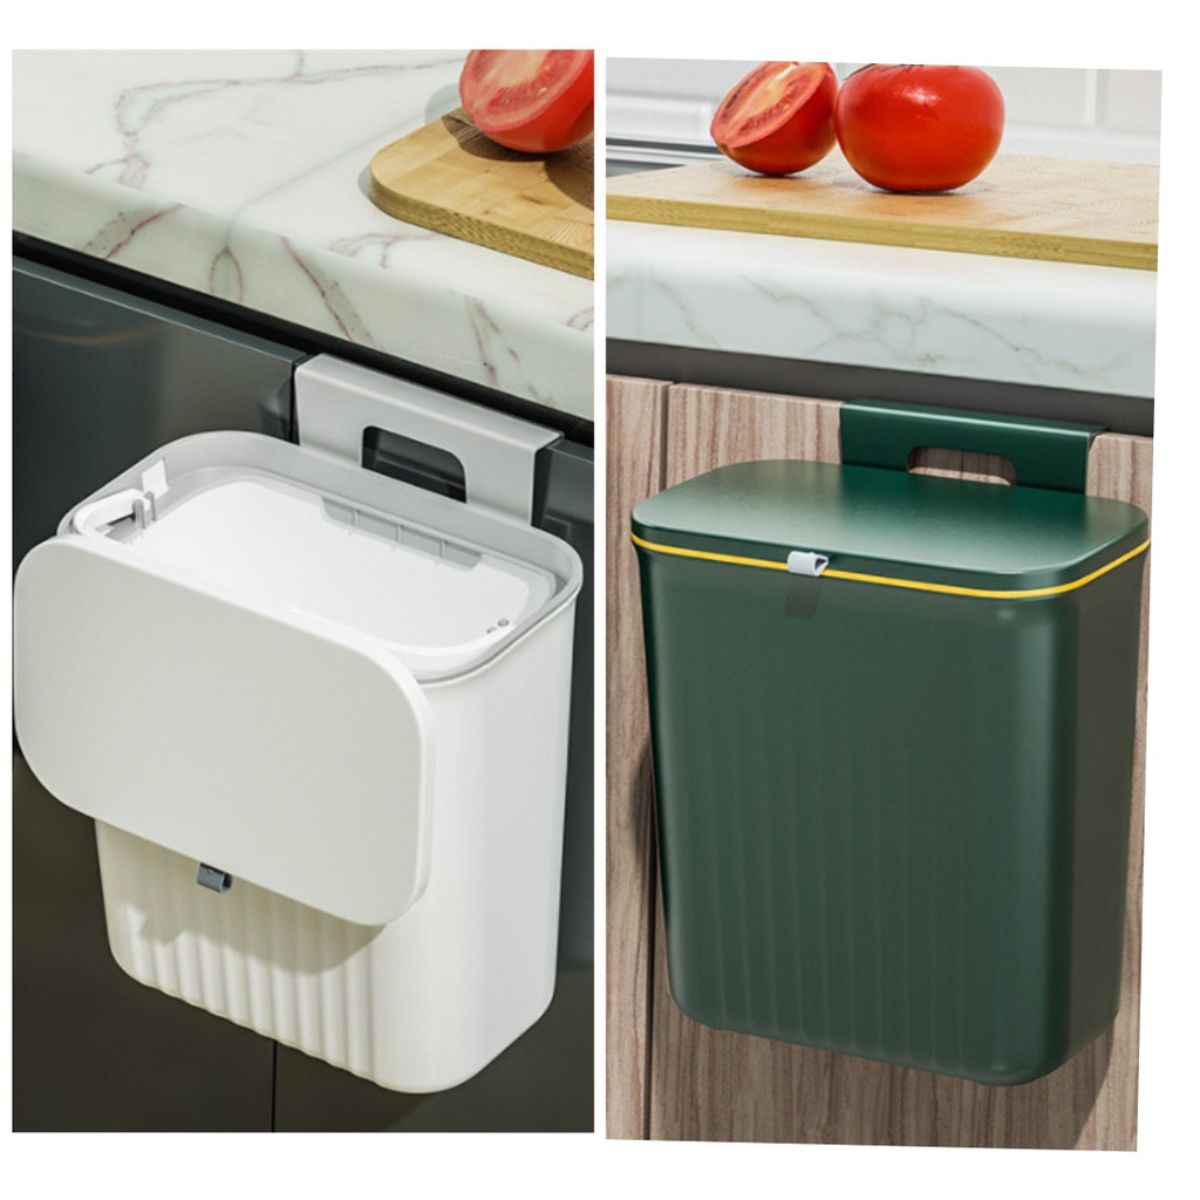 Thùng rác treo tủ bếp nhà tắm 9L, có nắp thông minh, móc cài hoặc dán tường